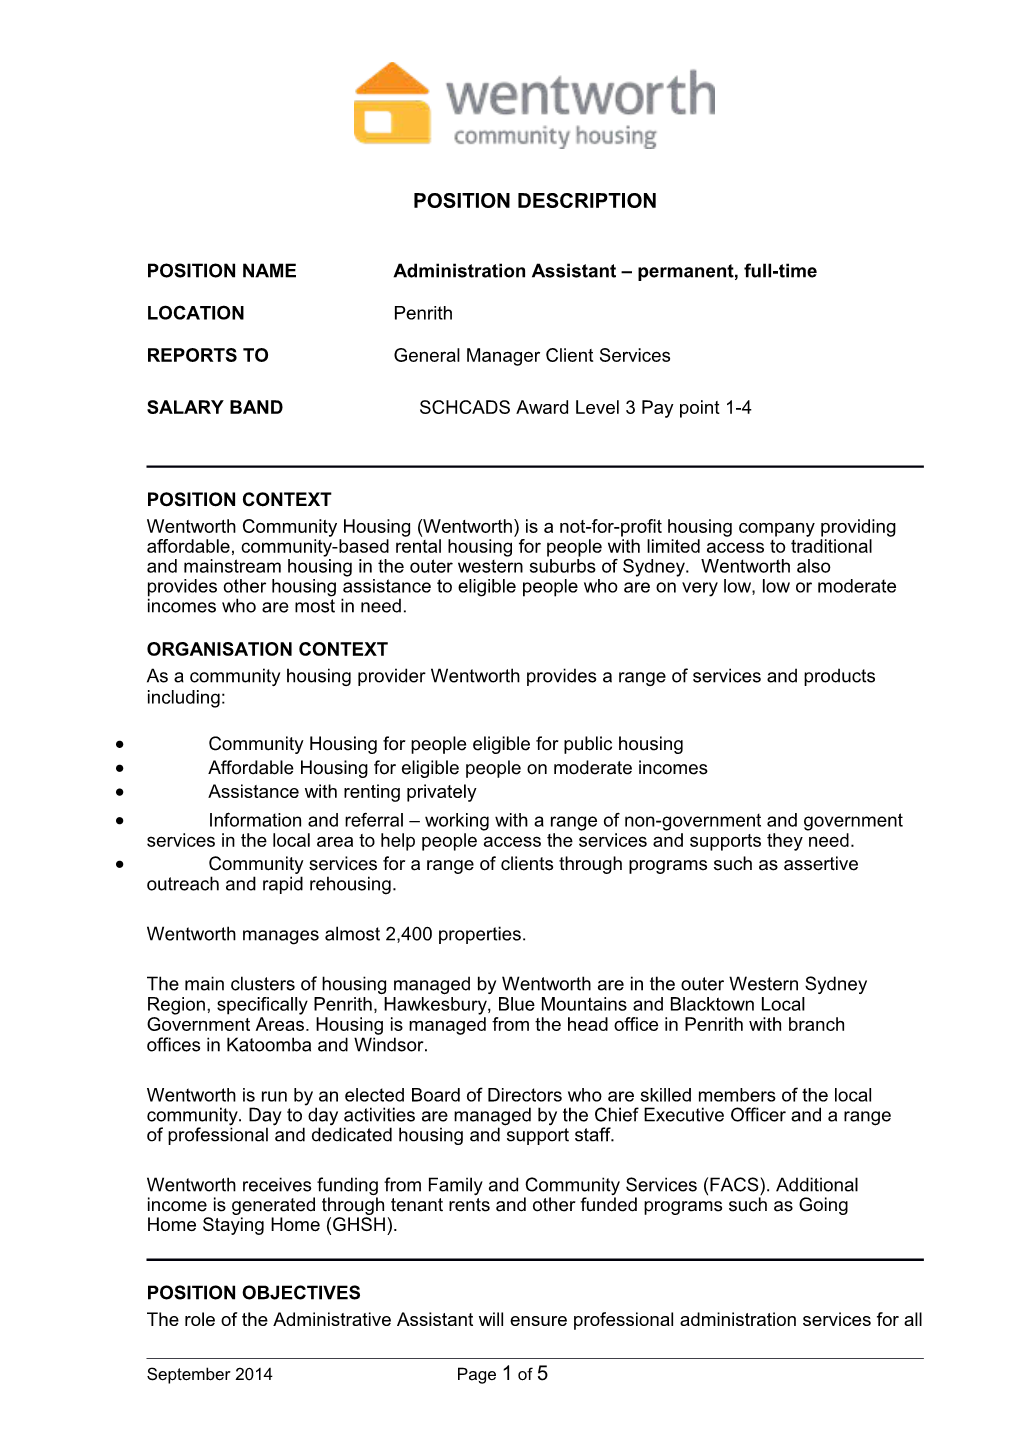 Position Description: Administration Assistant